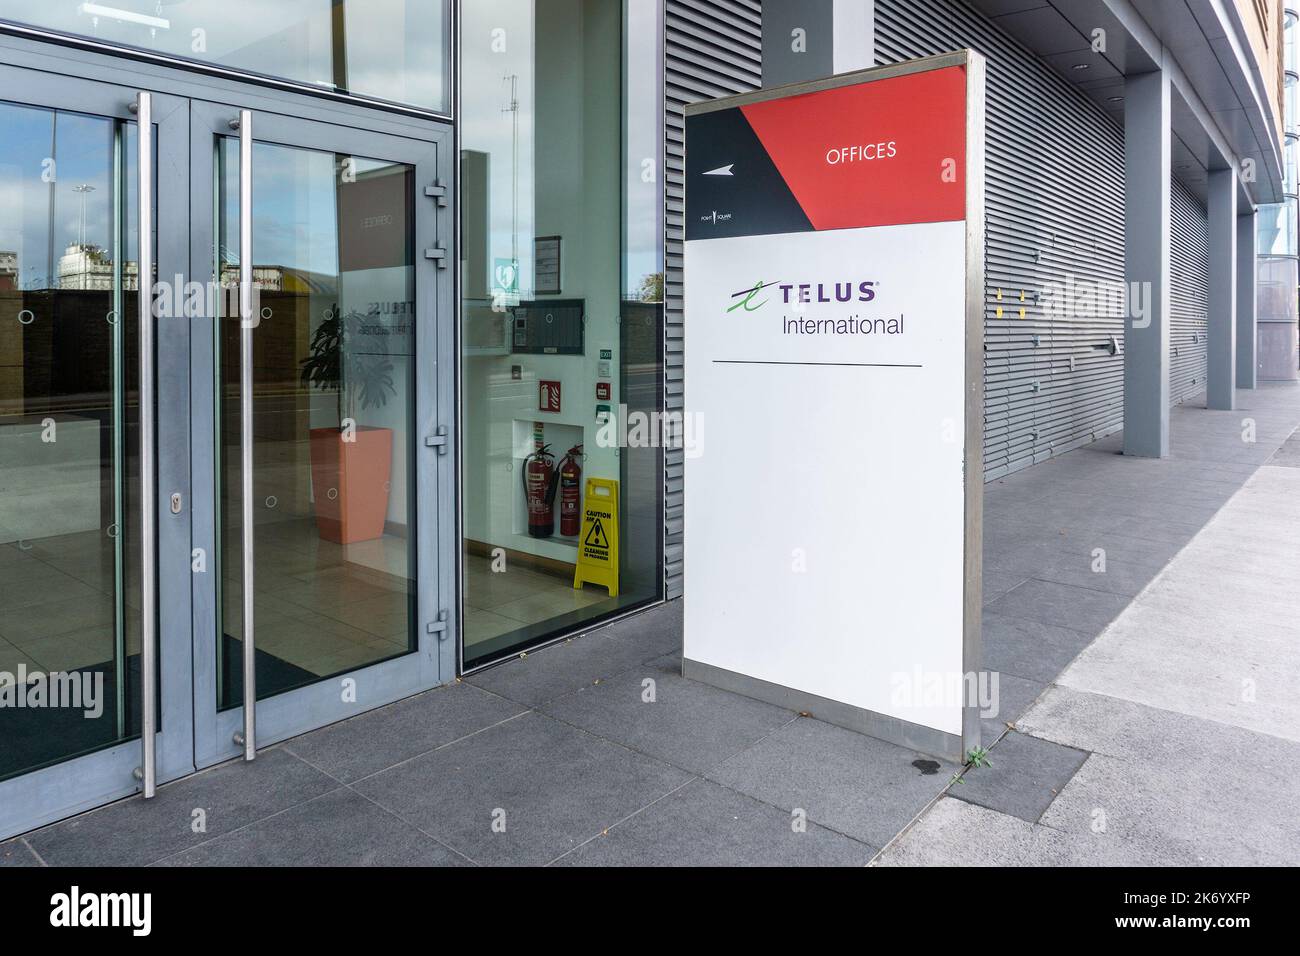 Les bureaux de Telus International, point Village, Dublin, Irlande. Fournisseur de solutions d'assistance technique et d'expérience client multilingues. Banque D'Images